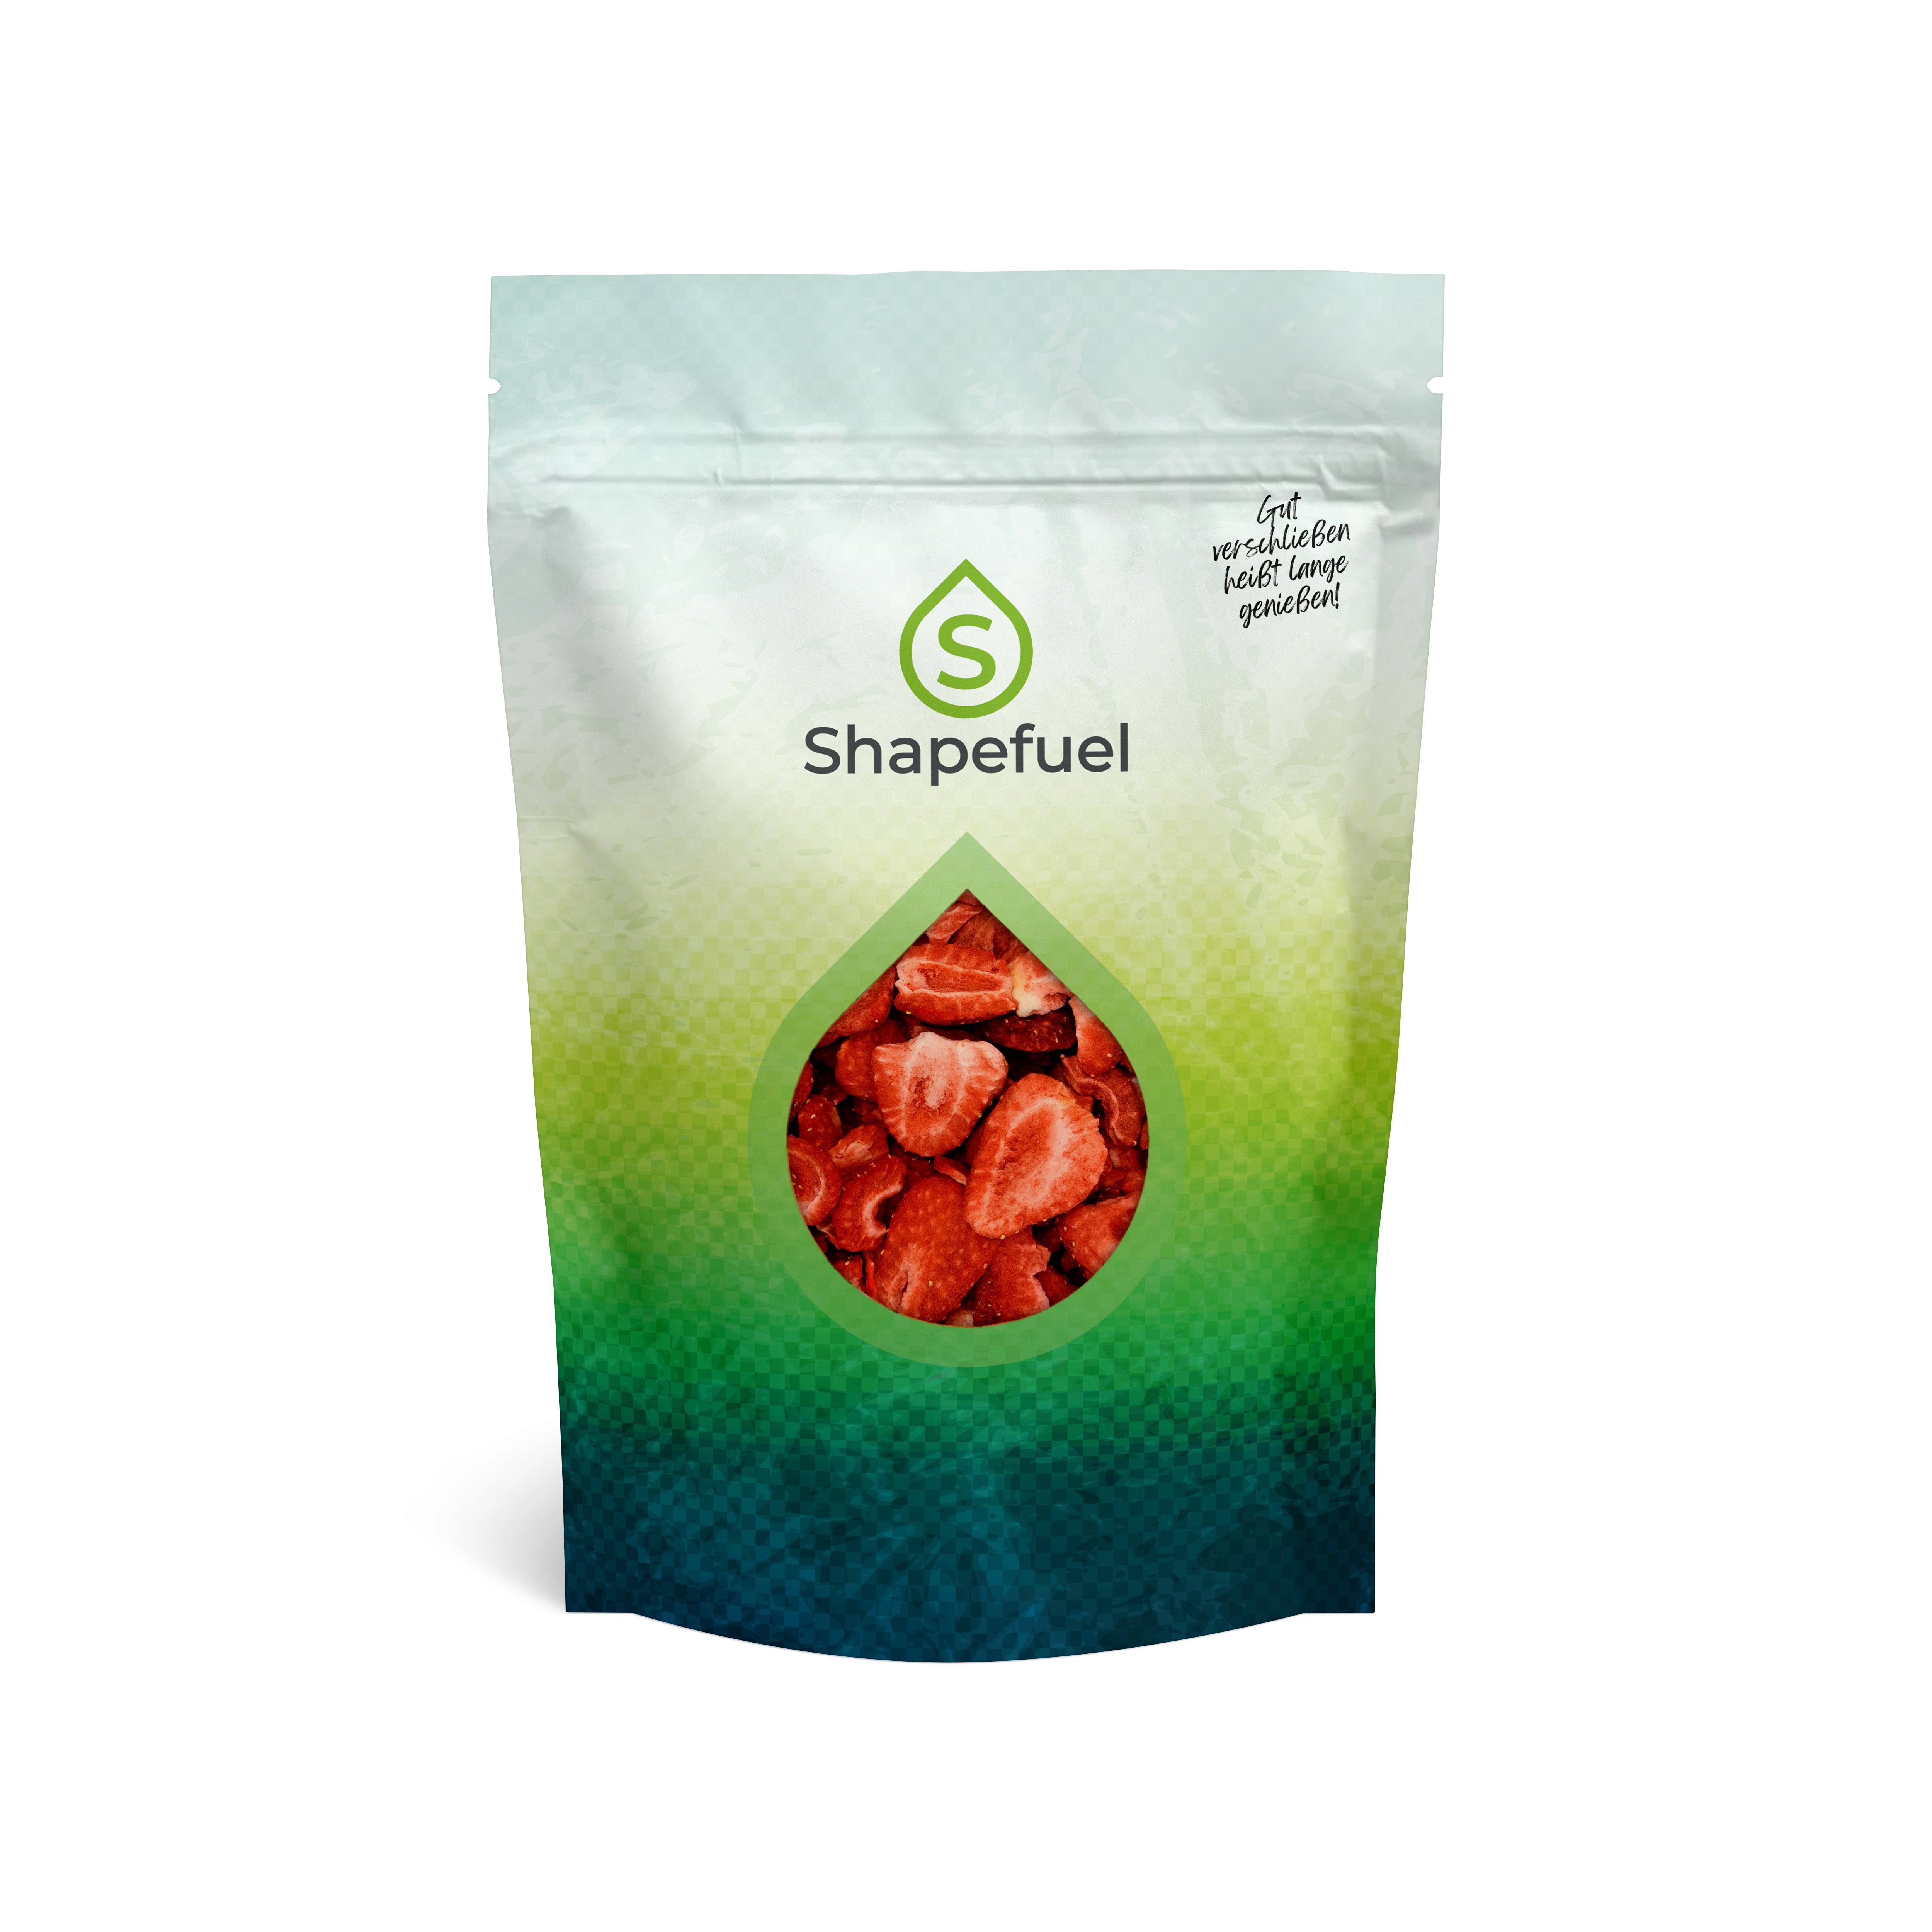 gefriergetrocknete Erdbeeren in haltbarer Verpackung für dauerhaft beste Qualität der Trockenfrüchte. So bleibt es ein crunchy snack.